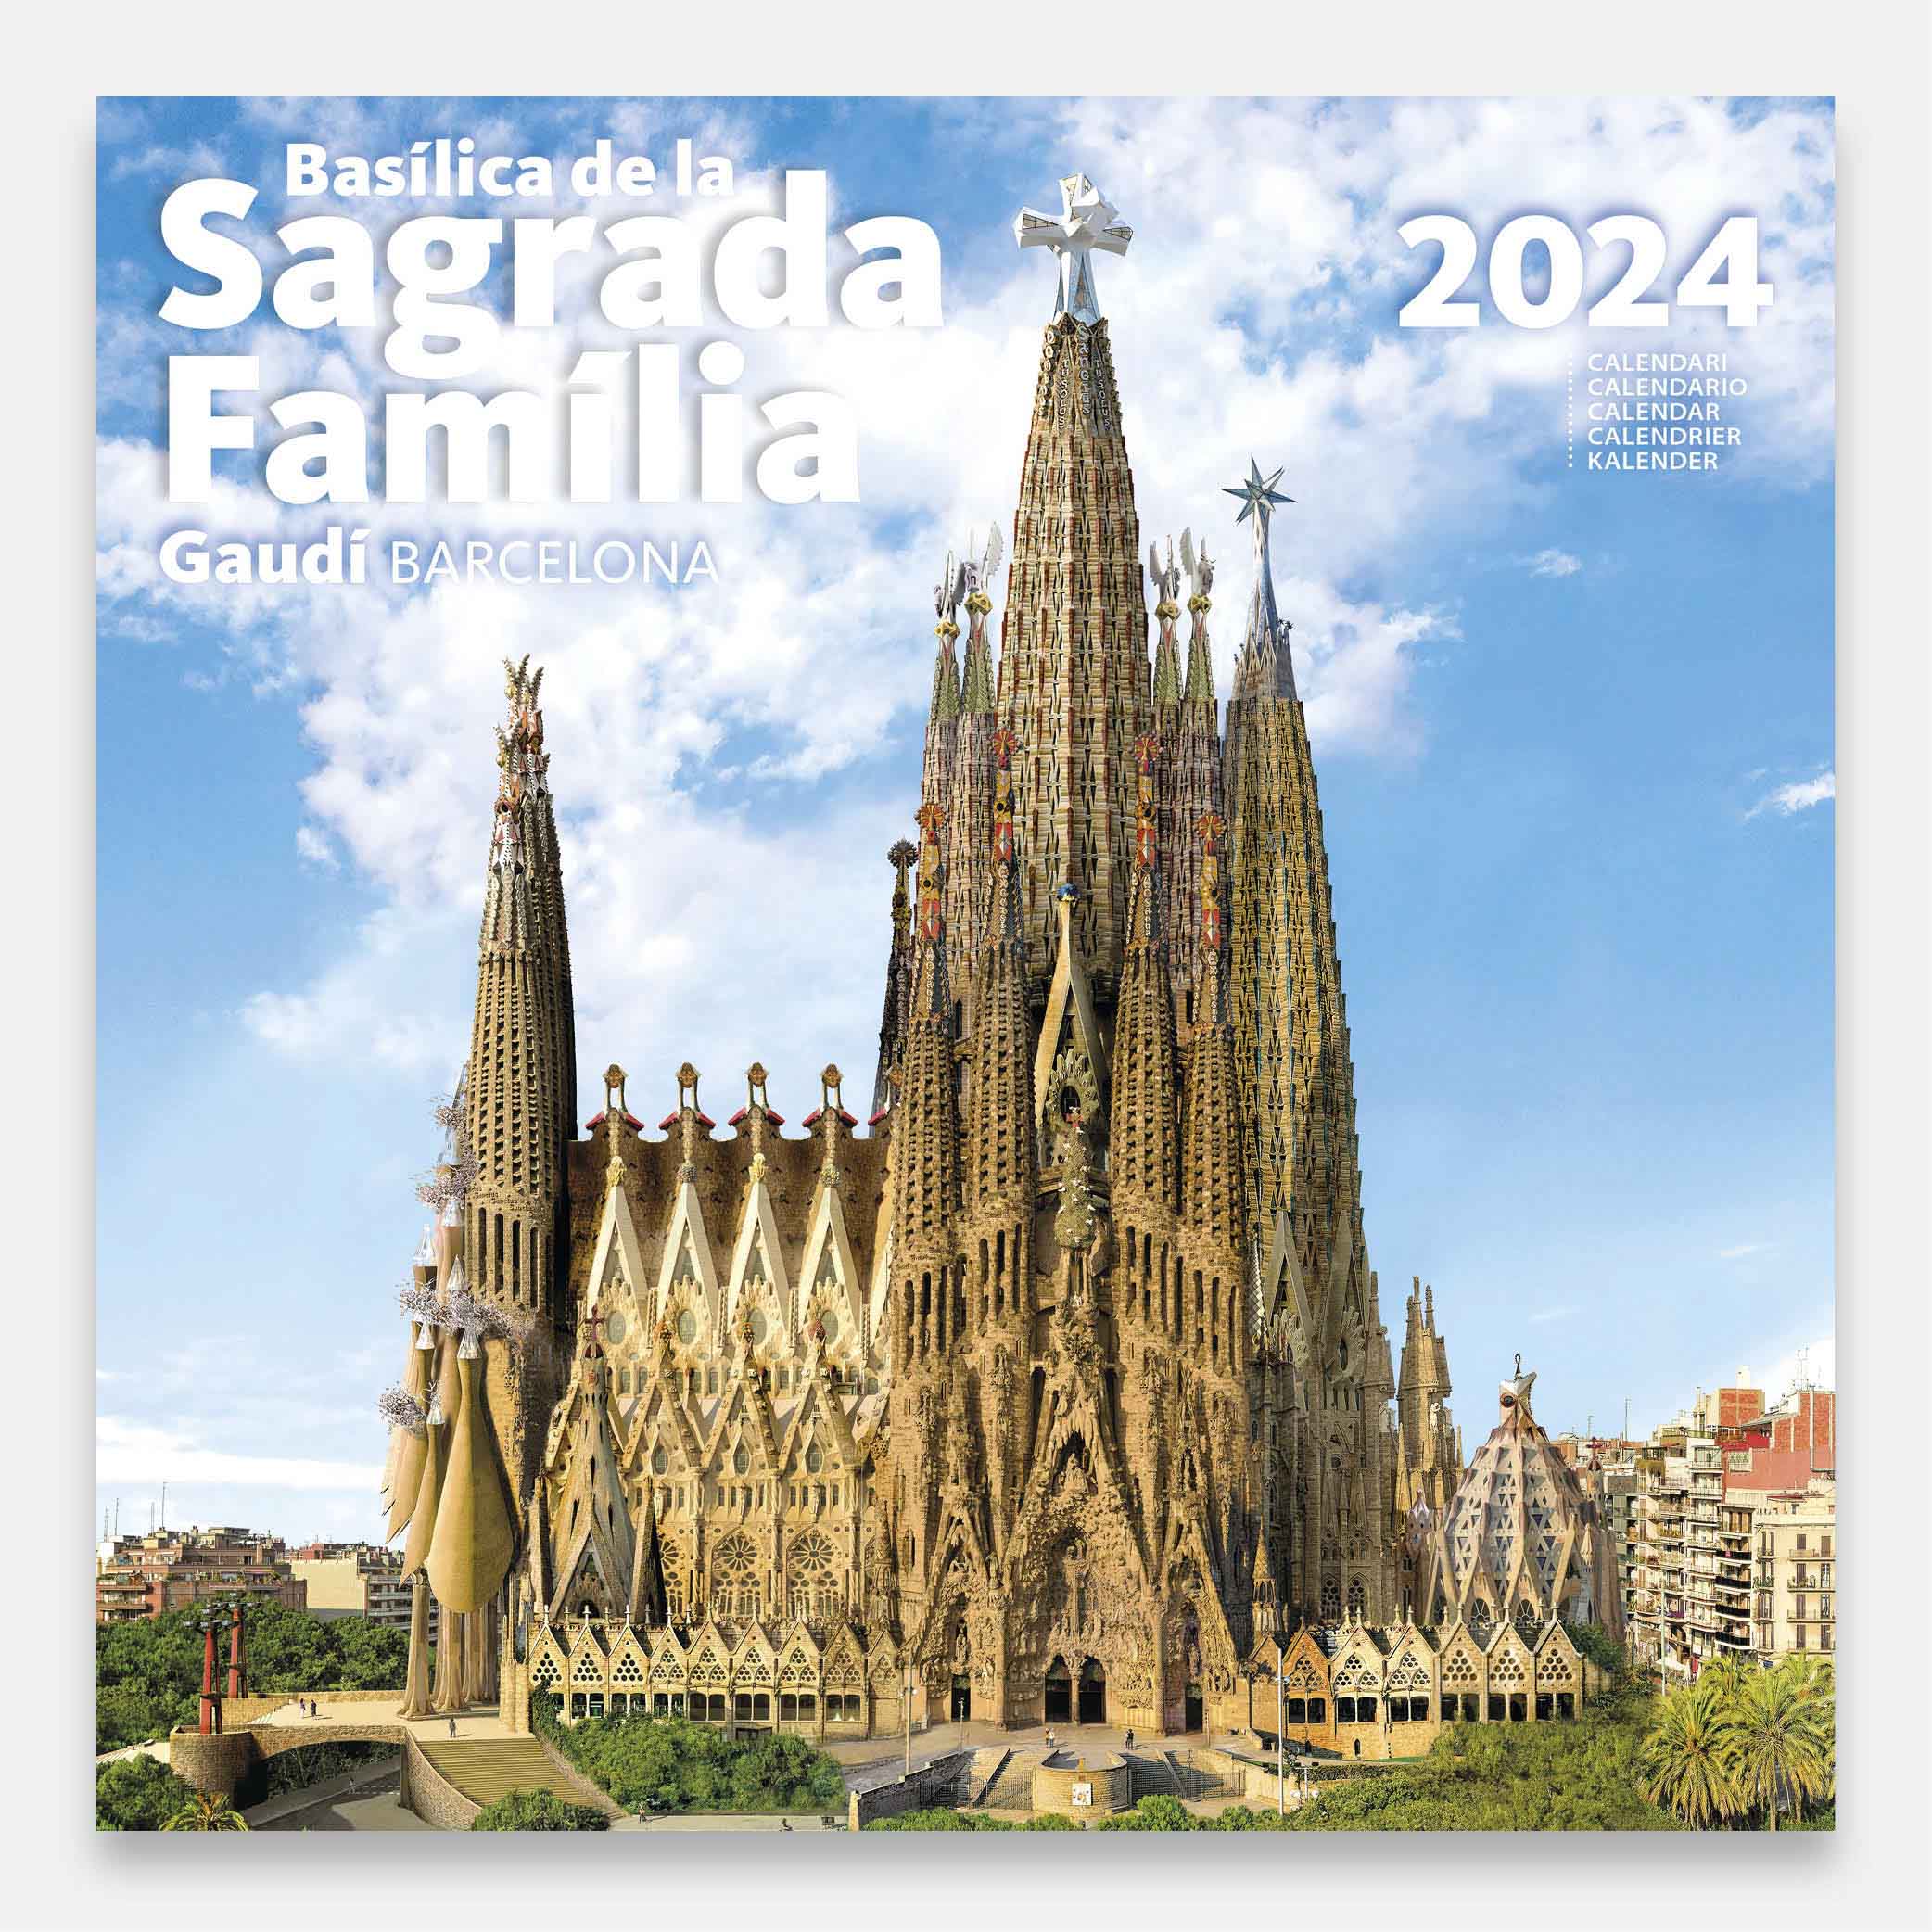 Calendario 2024 Basílica de la Sagrada Família 24sfg1 calendario pared 2024 gaudi sagrada familia